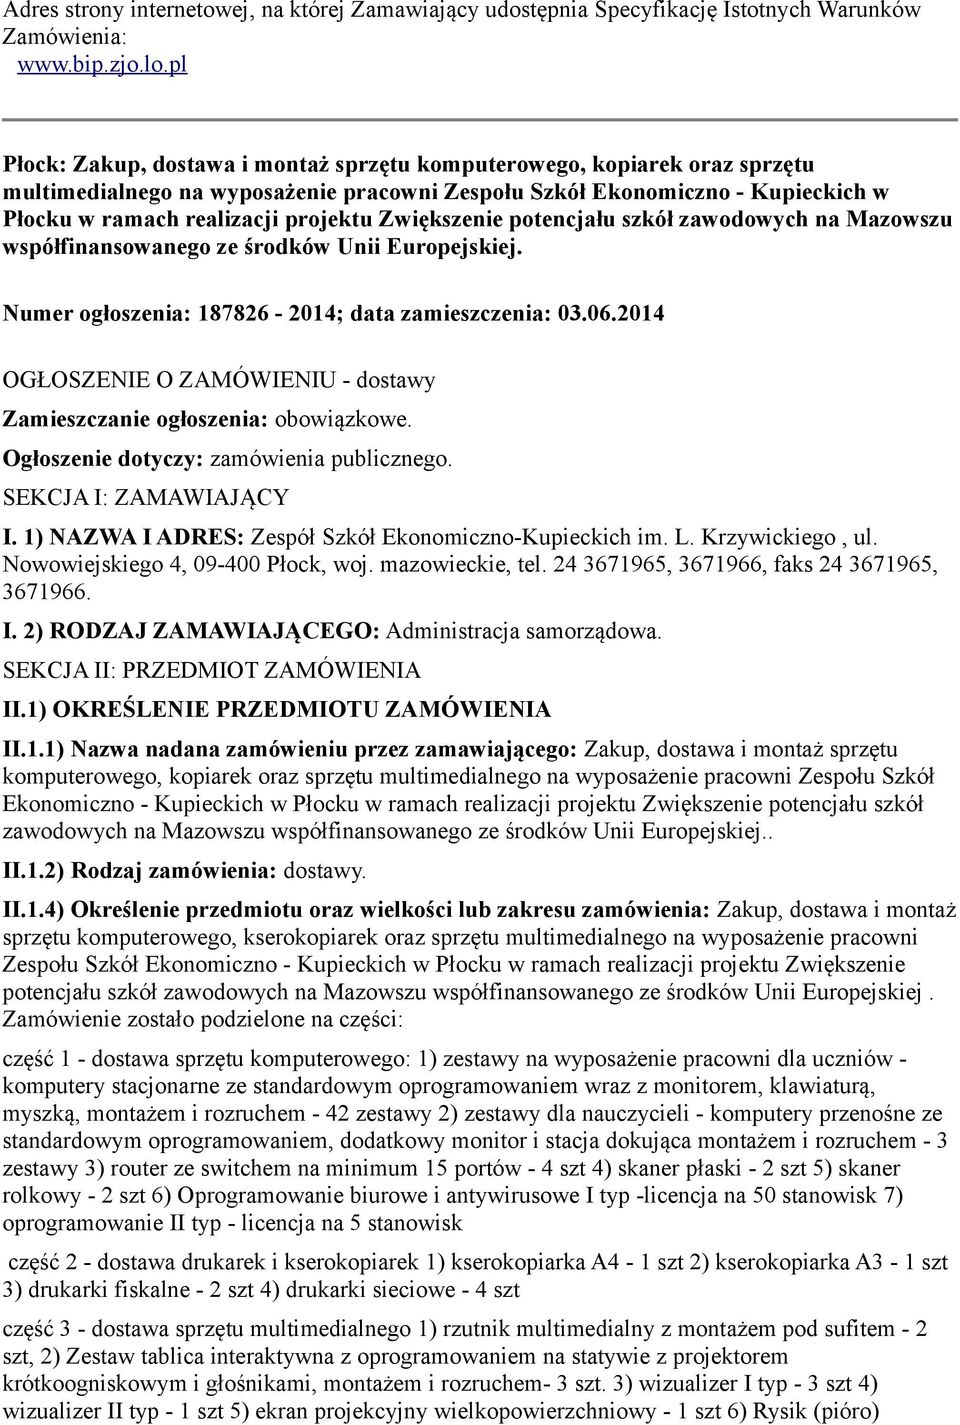 Zwiększenie potencjału szkół zawodowych na Mazowszu współfinansowanego ze środków Unii Europejskiej. Numer ogłoszenia: 187826-2014; data zamieszczenia: 03.06.